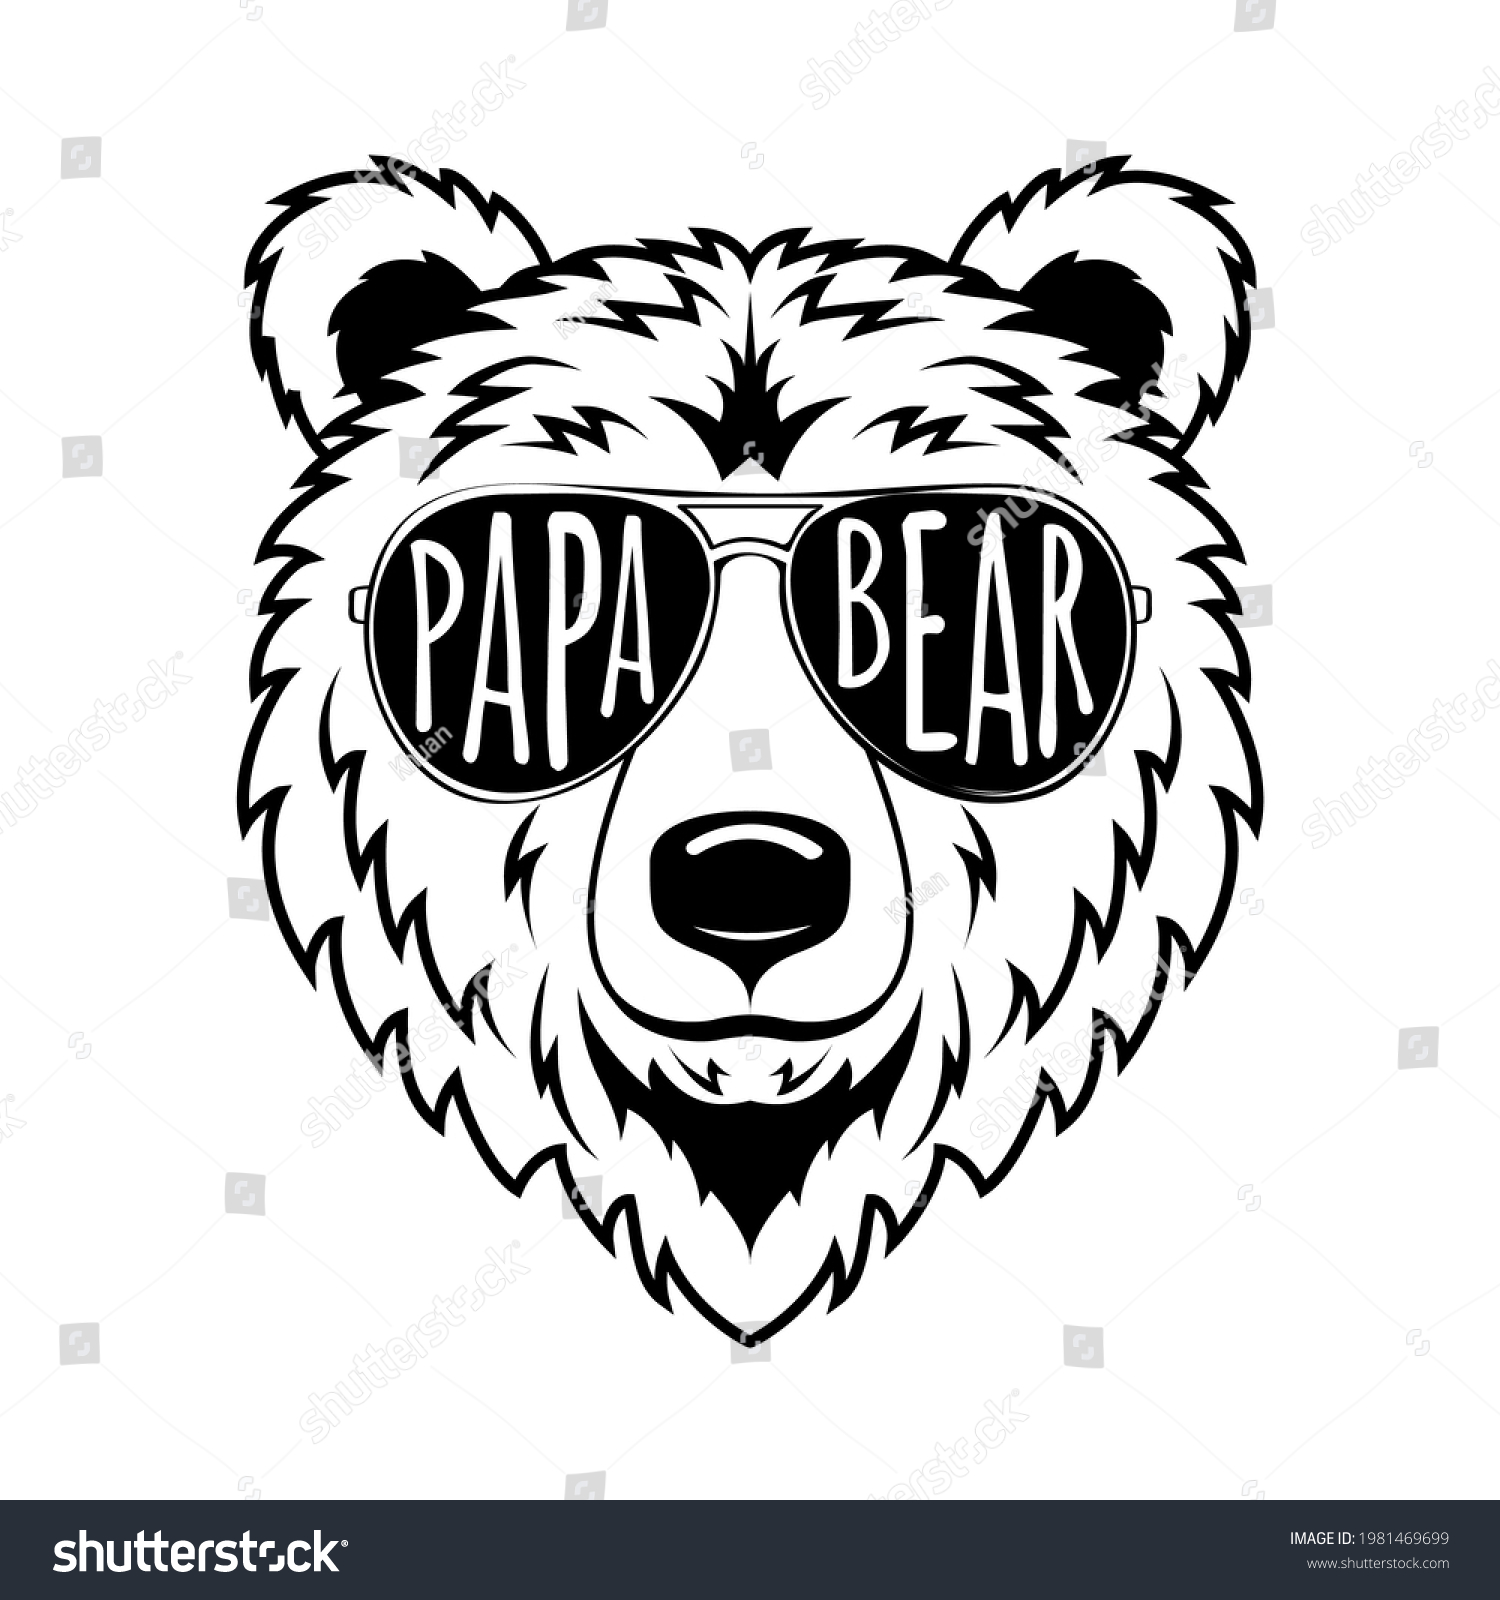 Cute Papa Bear Draw illustration de stock 1981469699 Shutterstock